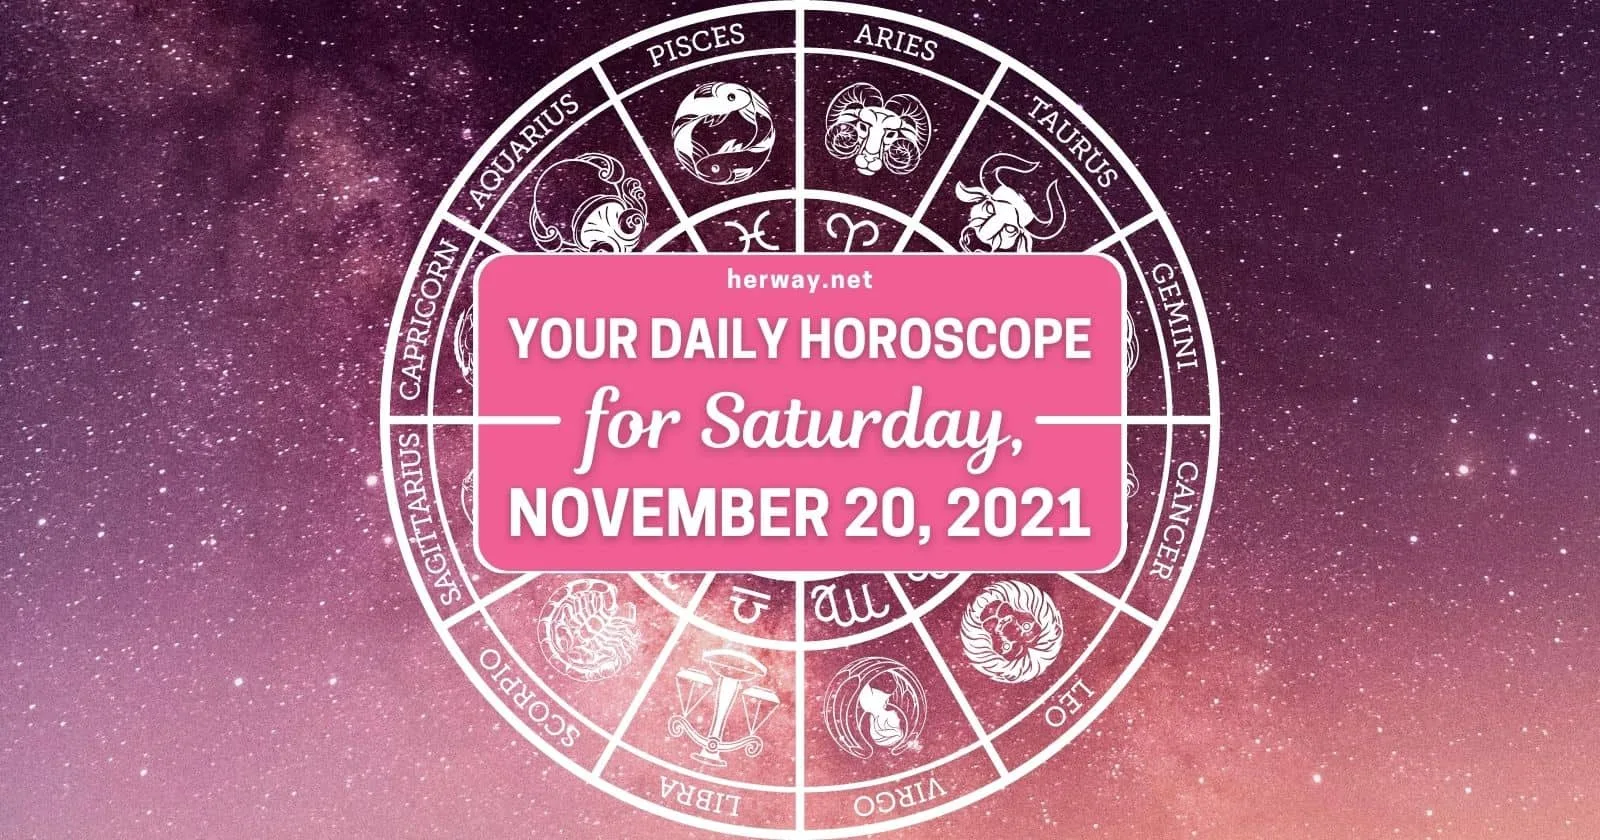 Daily Horoscope For Saturday, November 20, 2021